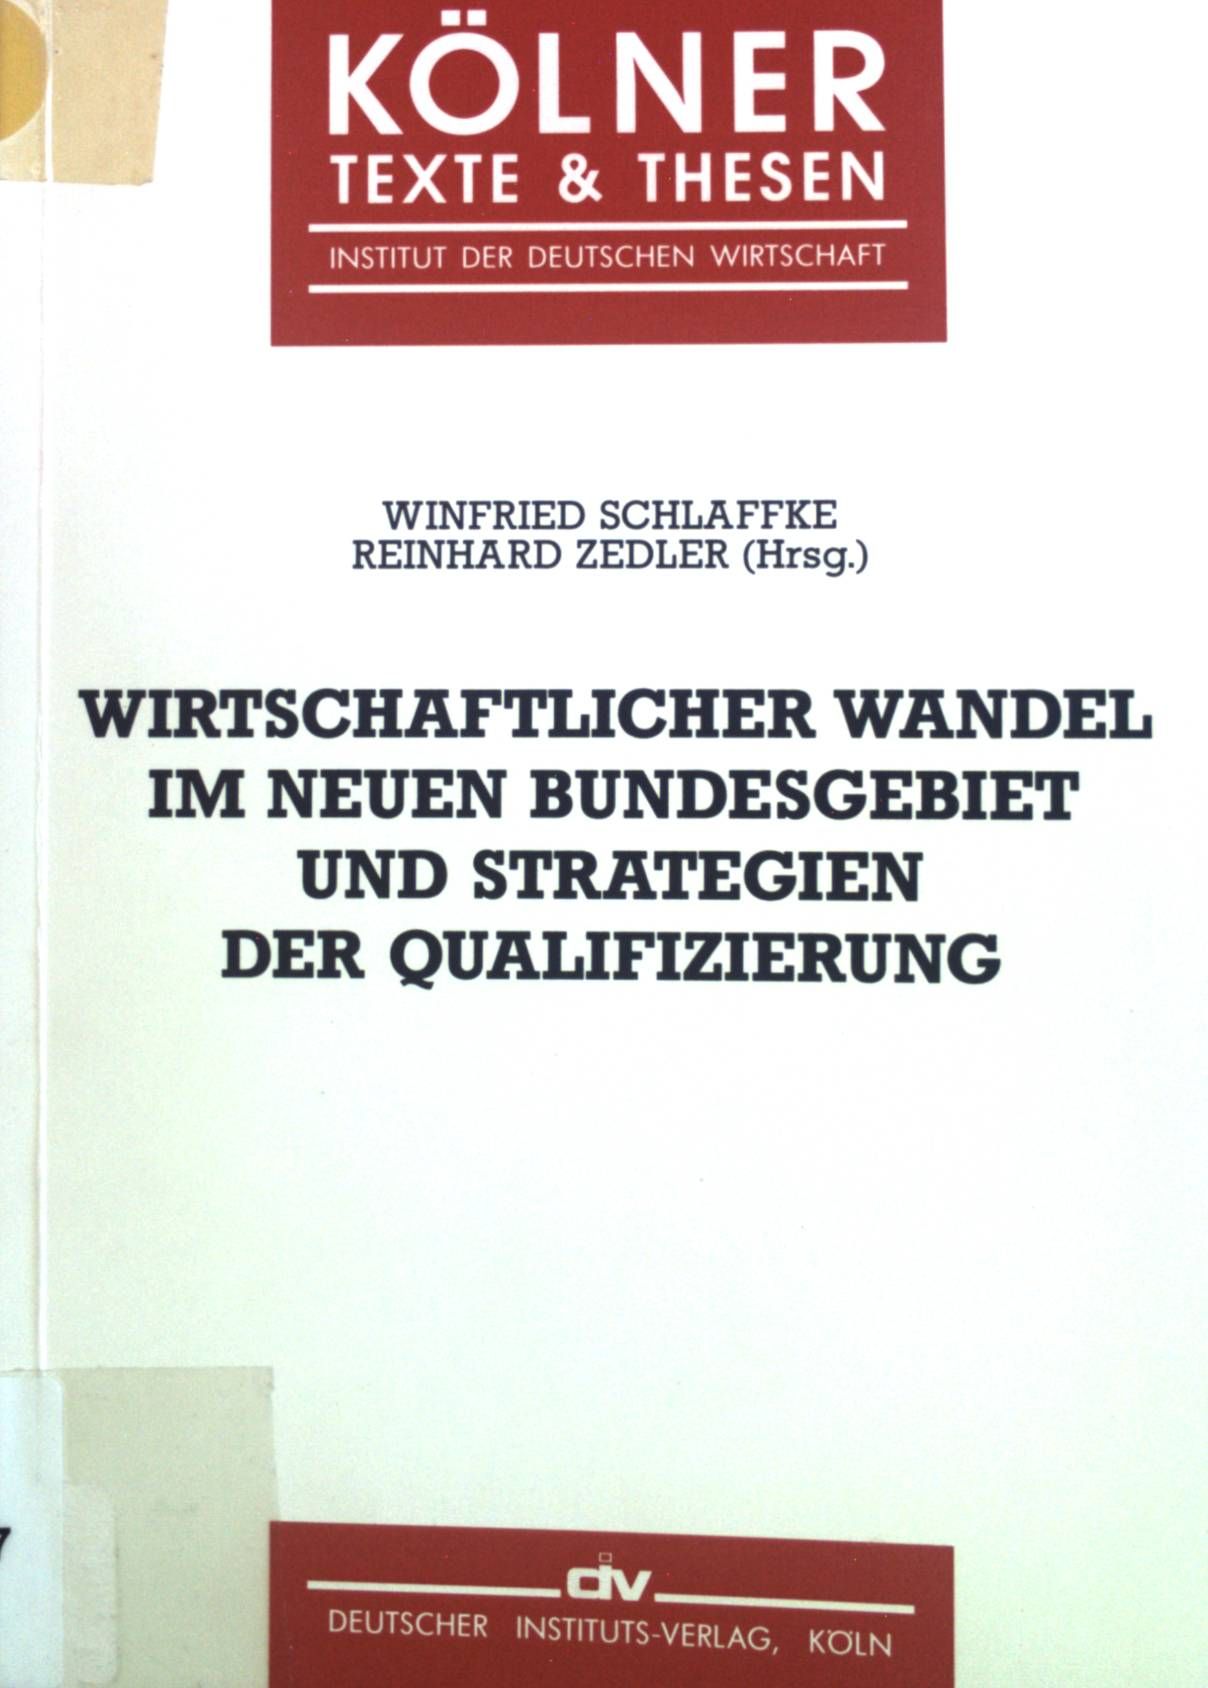 Wirtschaftlicher Wandel im neuen Bundesgebiet und Strategien der Qualifizierung. Kölner Texte & Thesen  6 - Schlaffke, Winfried